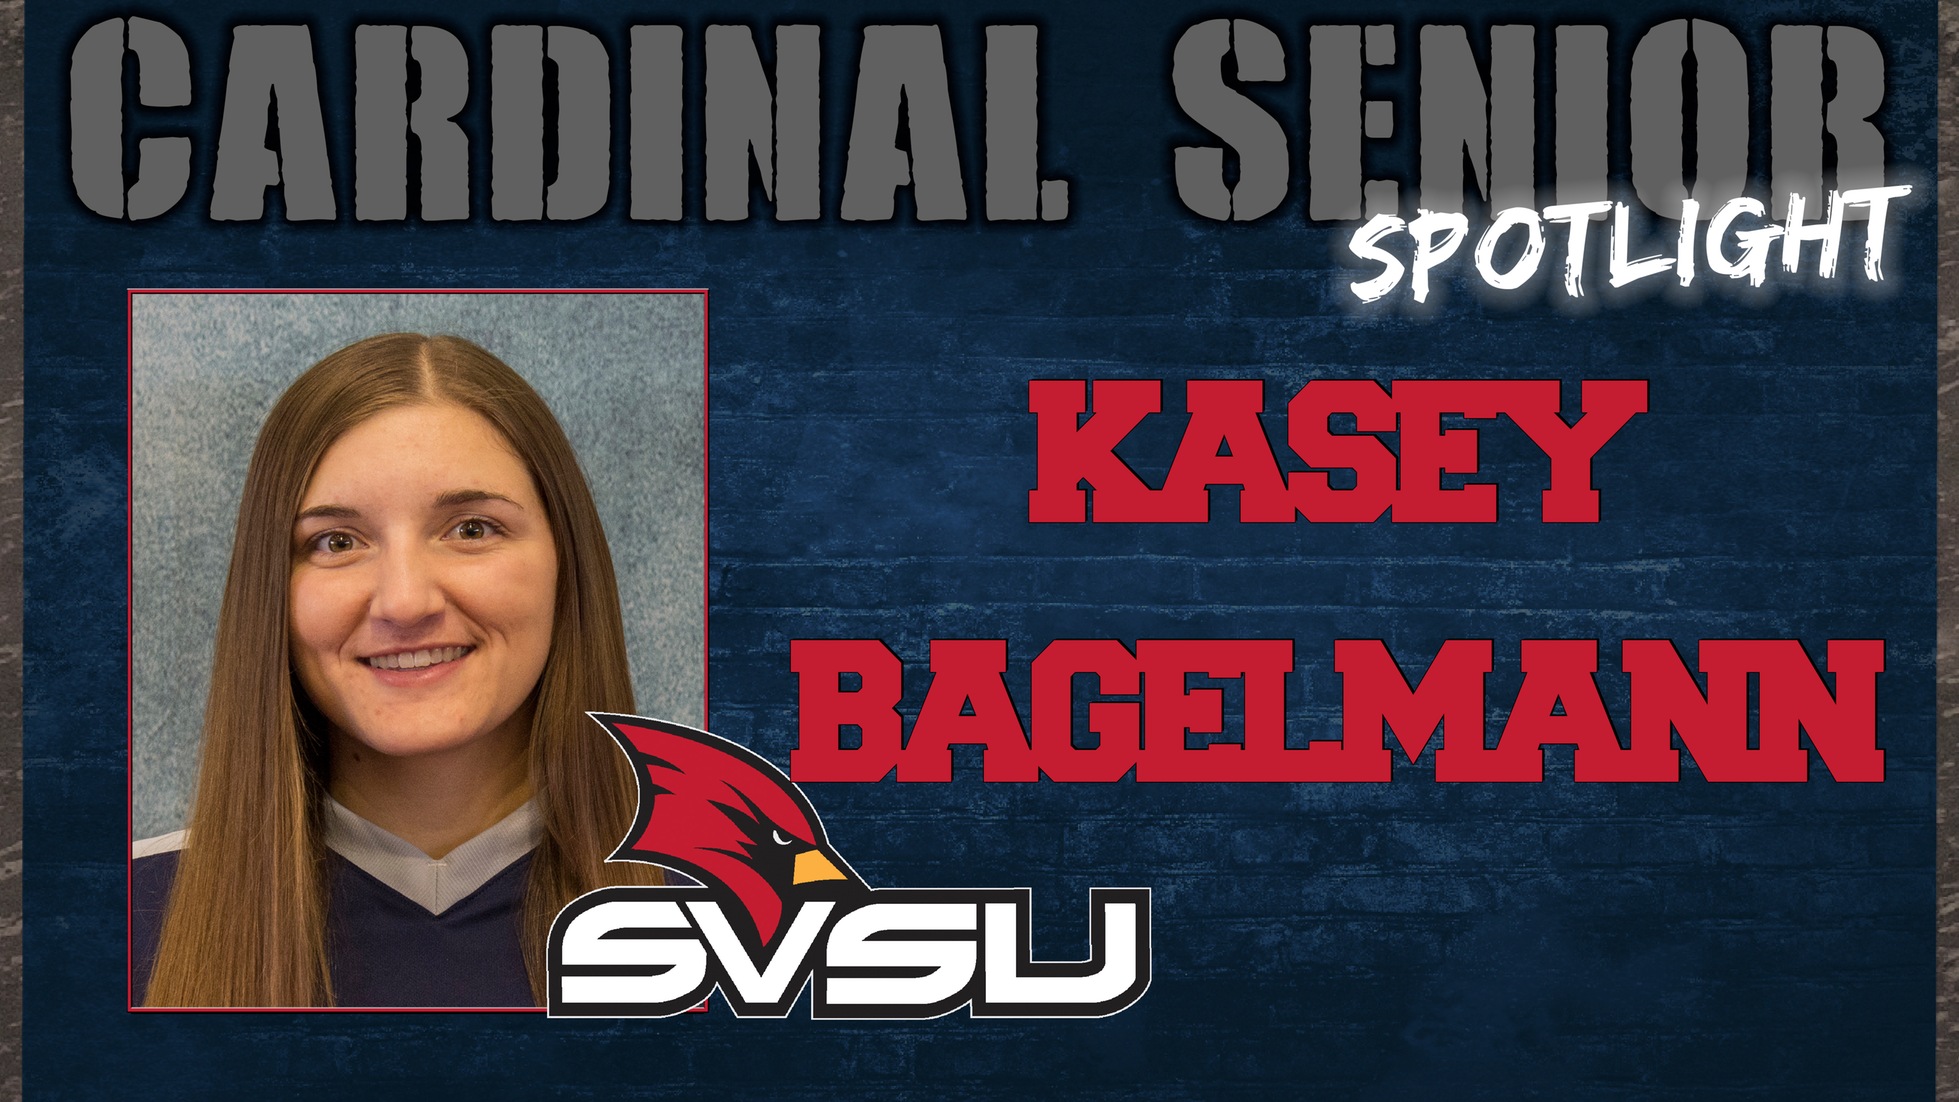 SVSU Cardinal Senior Spotlight - Kasey Bagelmann